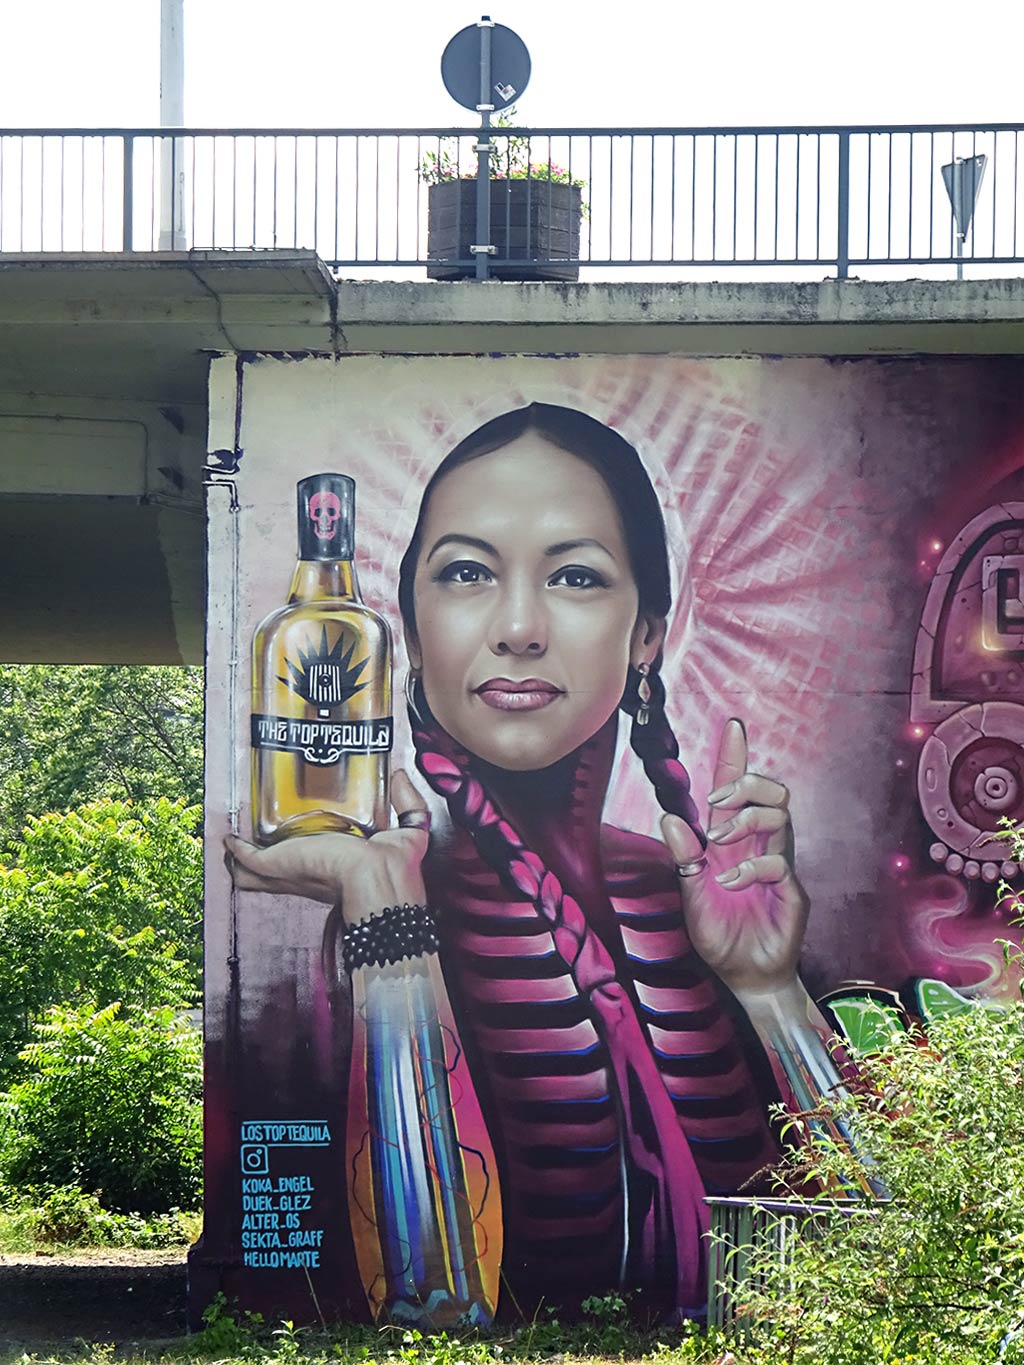 Meeting of Styles 2019 Wiesbaden - The Top Tequila Mural